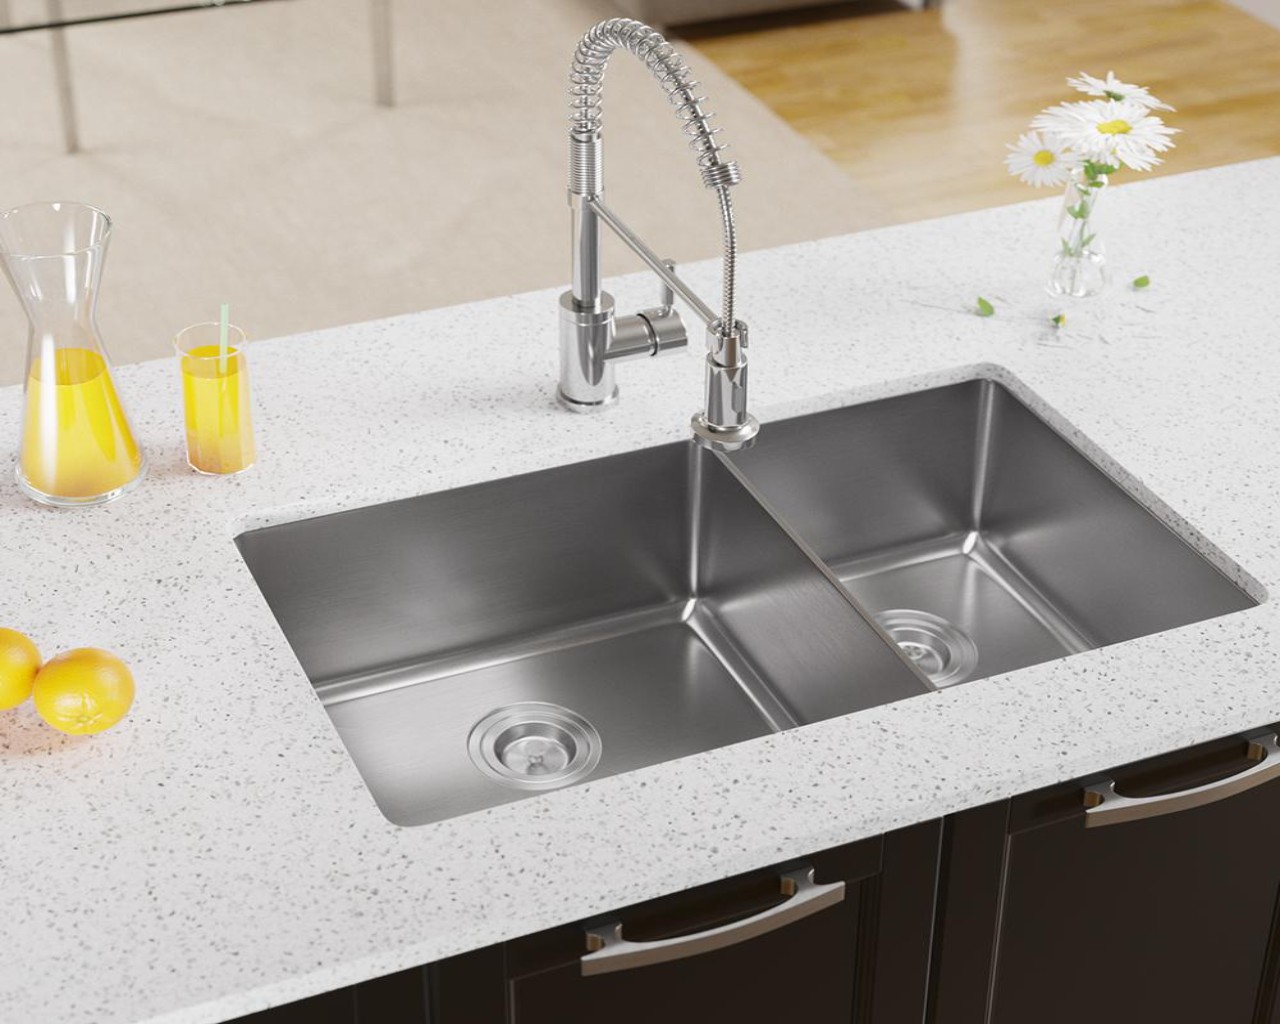 different kitchen sink materials